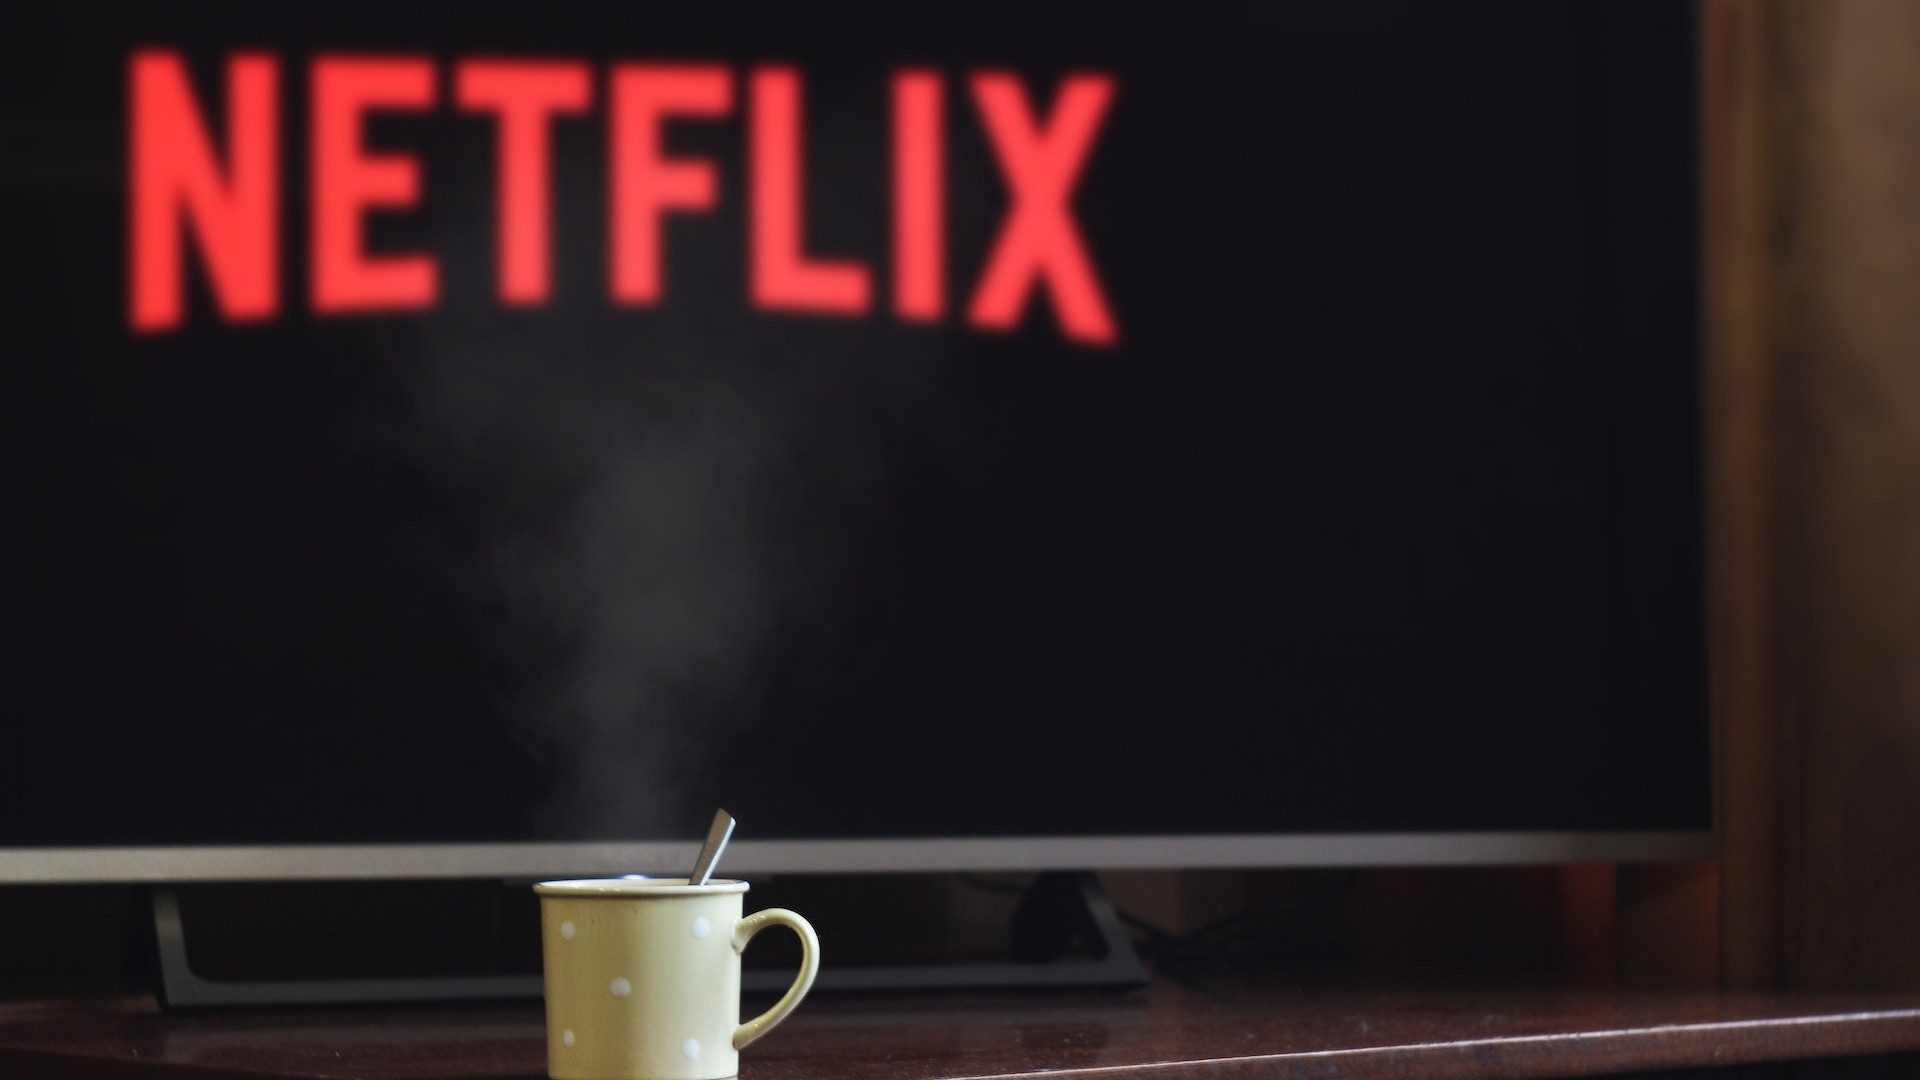 Logo des Streaming-Anbieters Netflix auf einem Fernseher, im Vordergrund eine Tasse